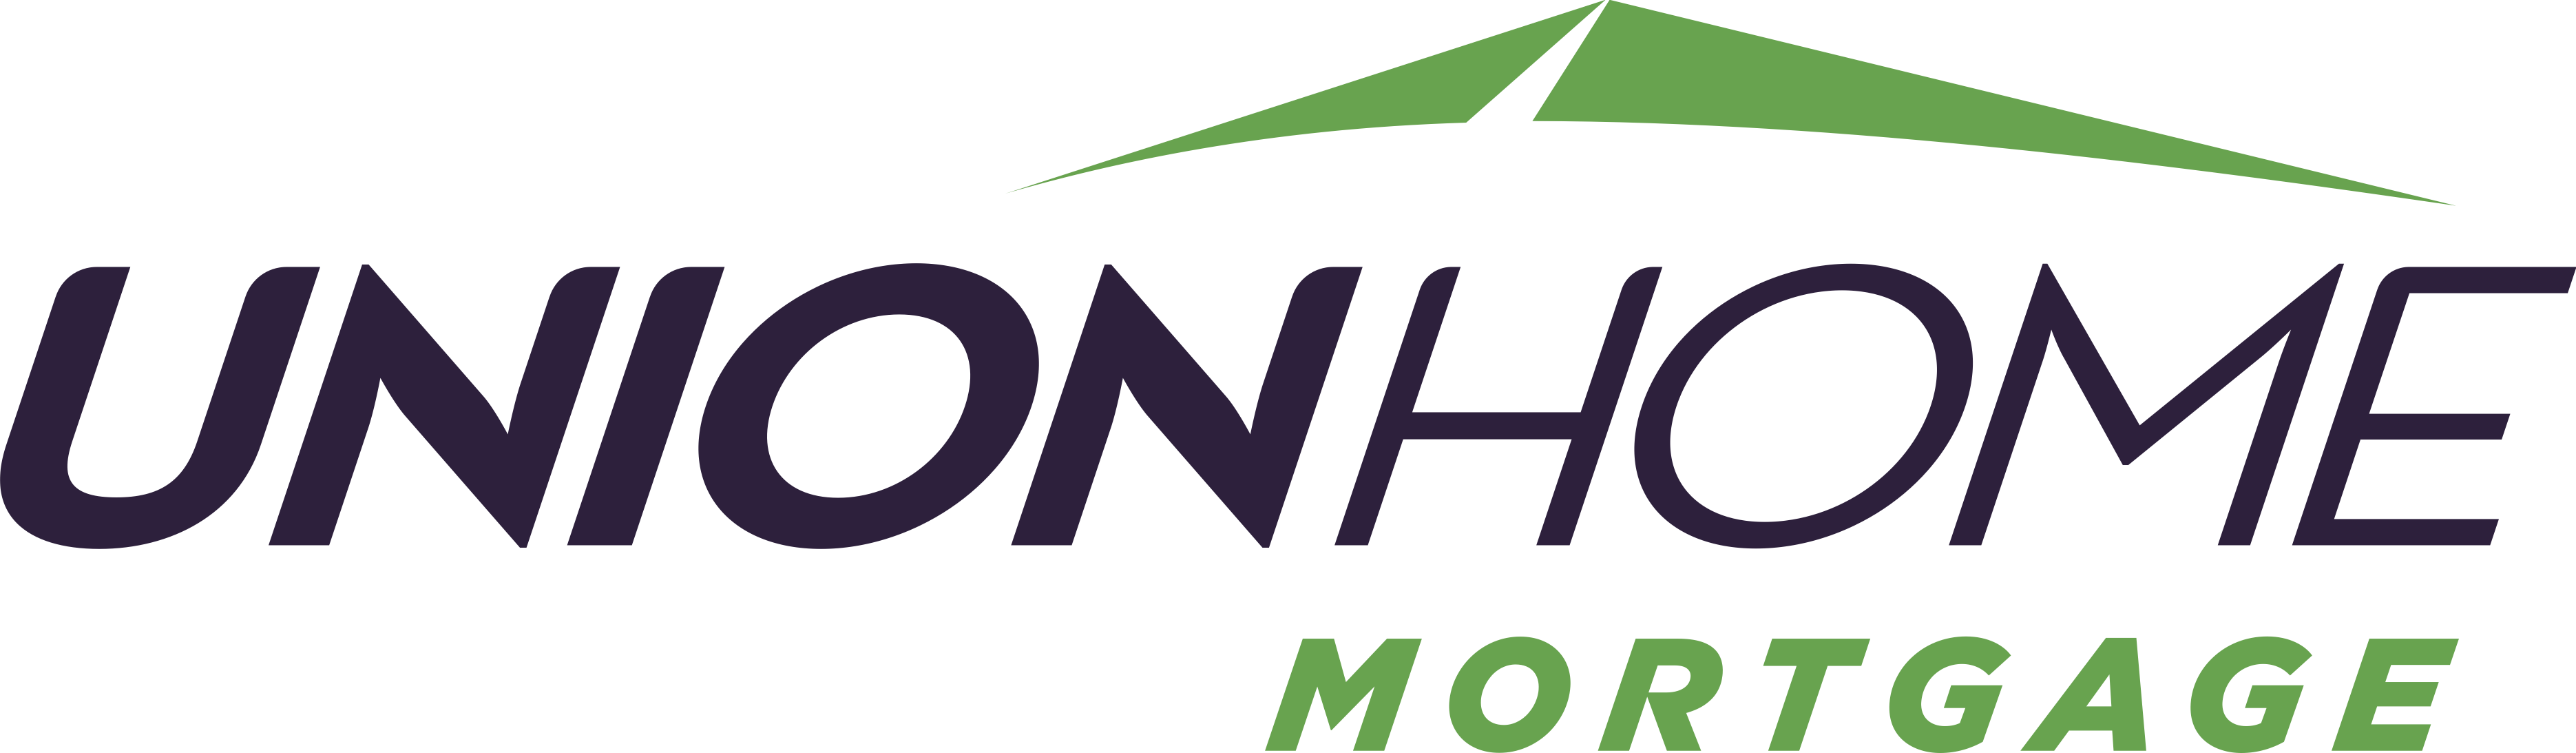 Union Home Mortgage Corp. Company Logo